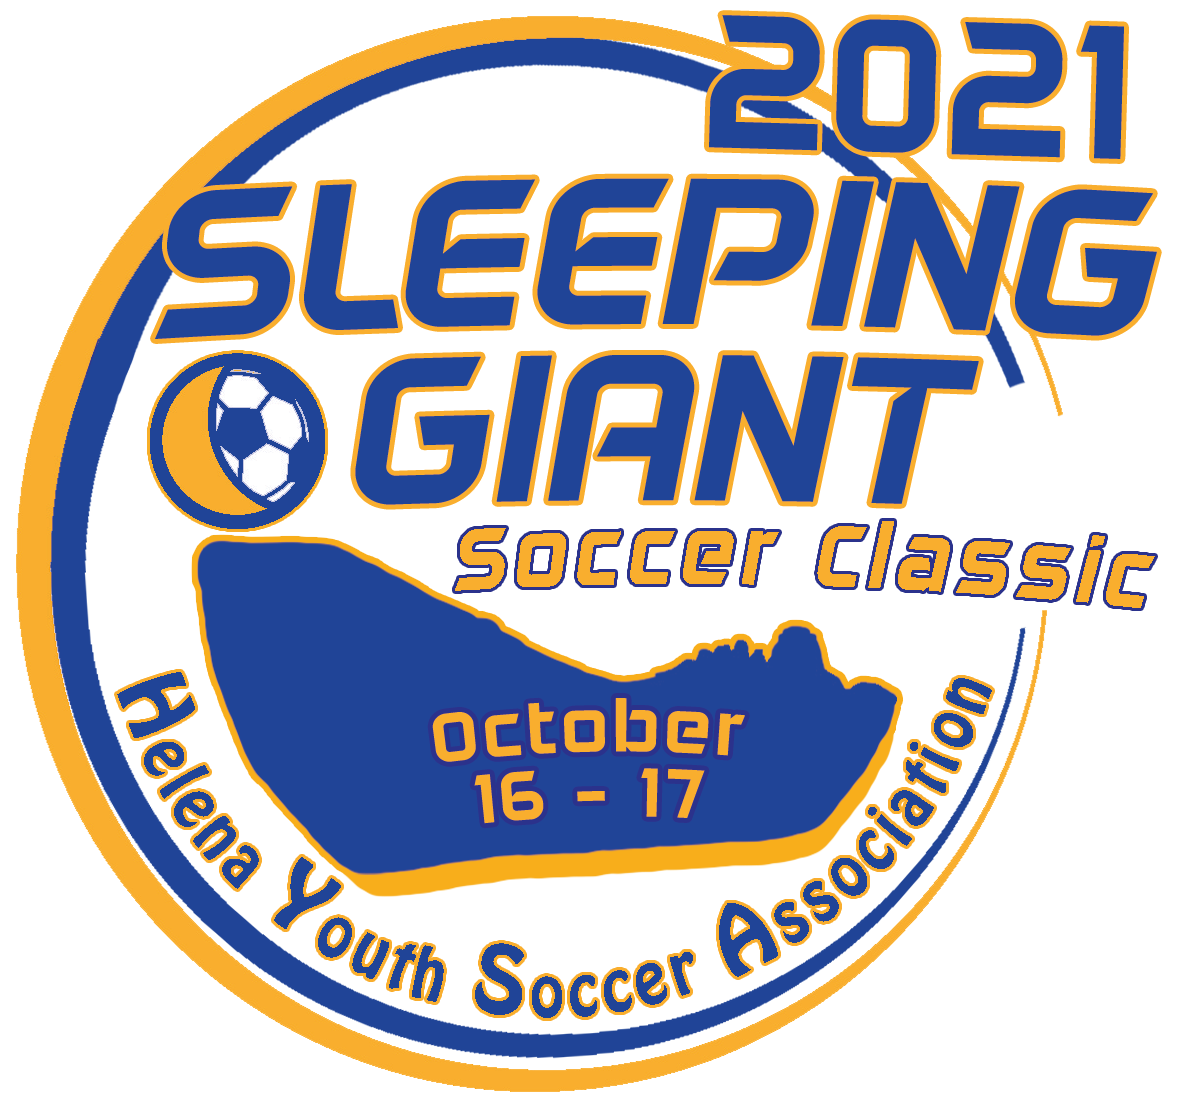 2021 Sleeping Giant Logo